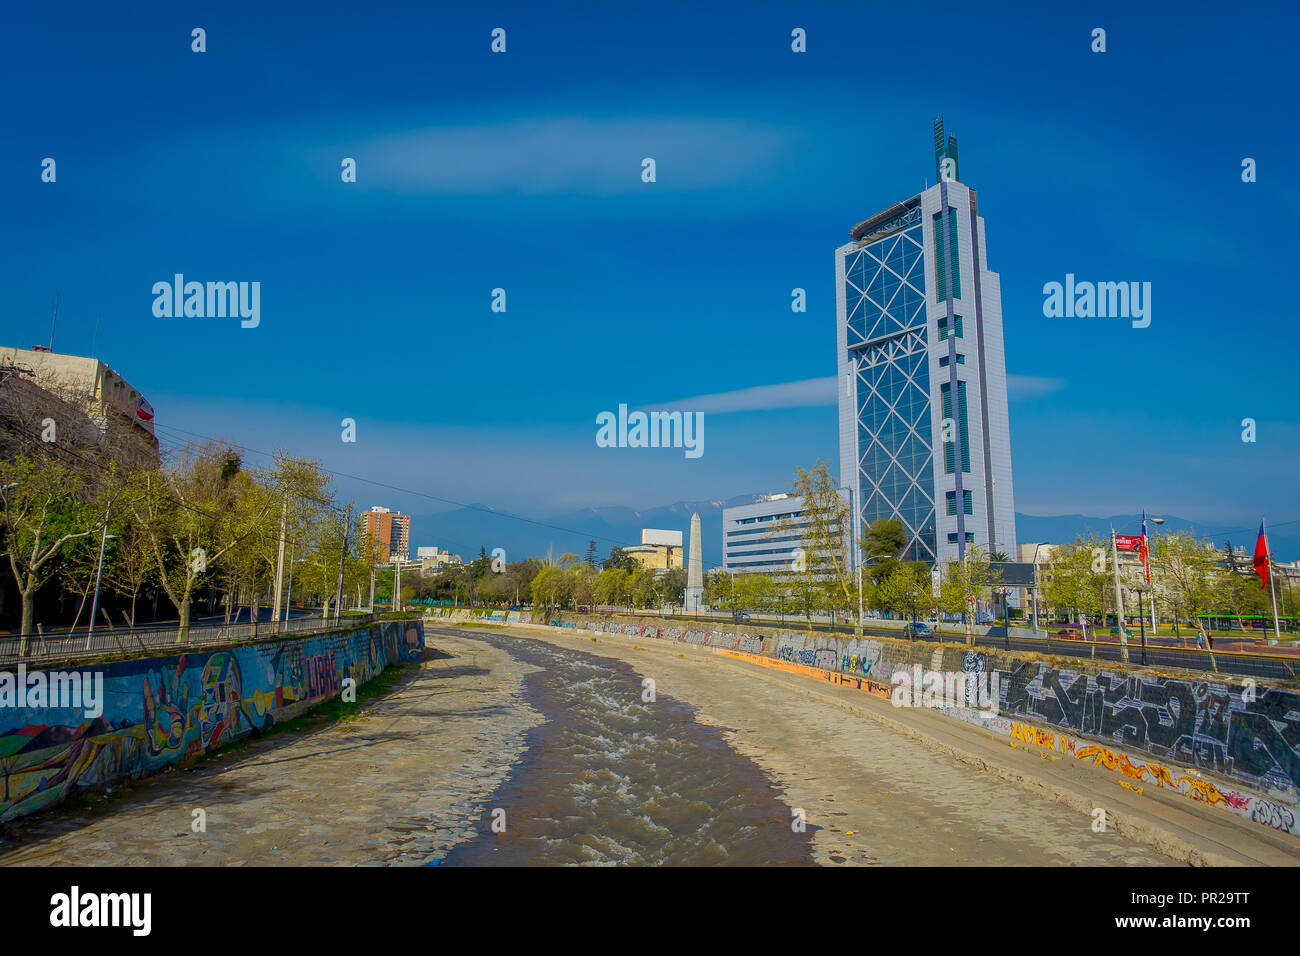 SANTIAGO, CHILE - 17. SEPTEMBER 2018: Im Freien von metallischen Brücke über den Kanal von Wasser in die forstliche Park in Santiago, der Hauptstadt Chiles Stockfoto